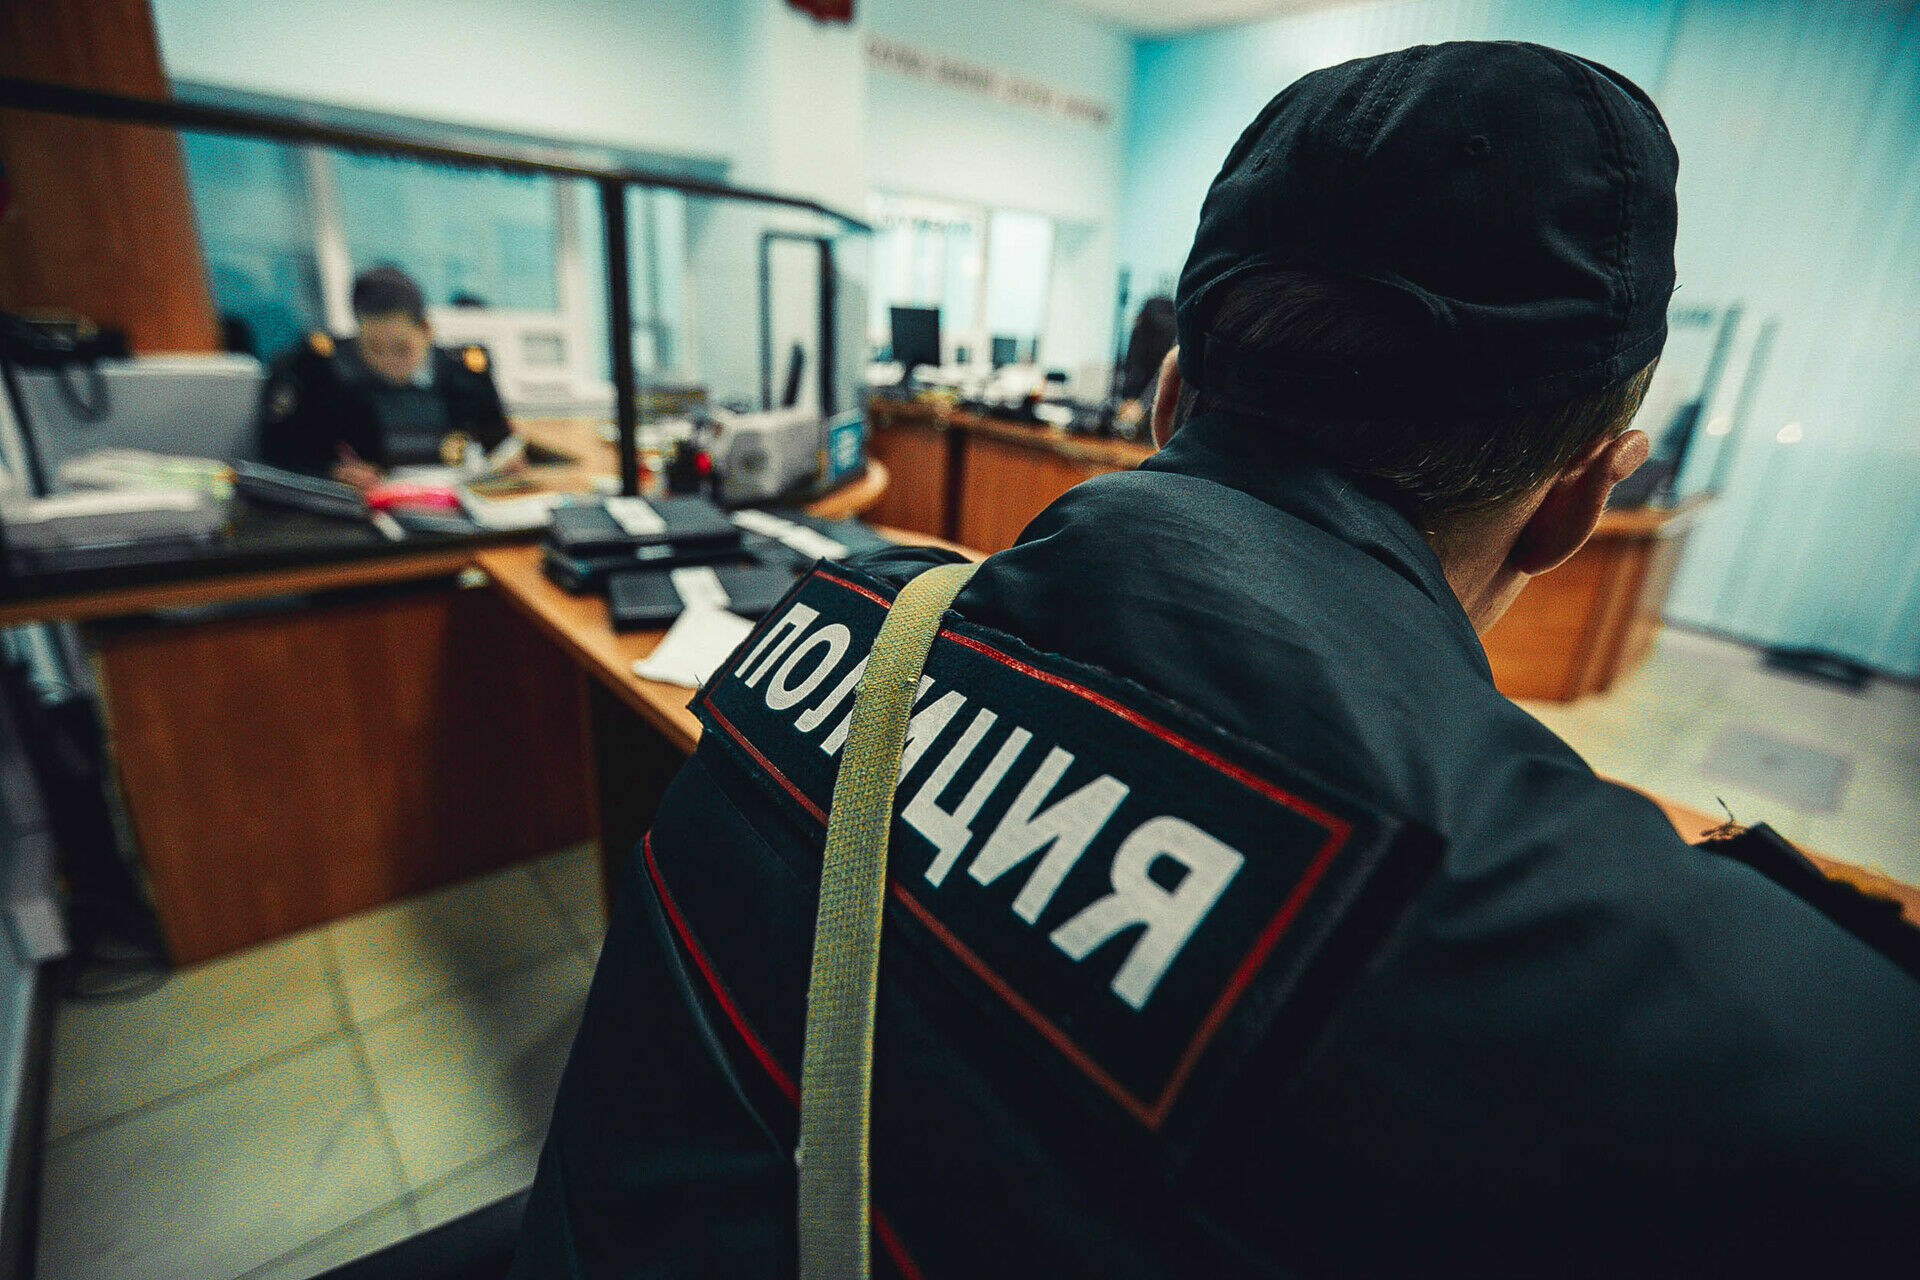 Саратовскую полицейскую оштрафуют на 2 тыс. рублей за занятие проституцией